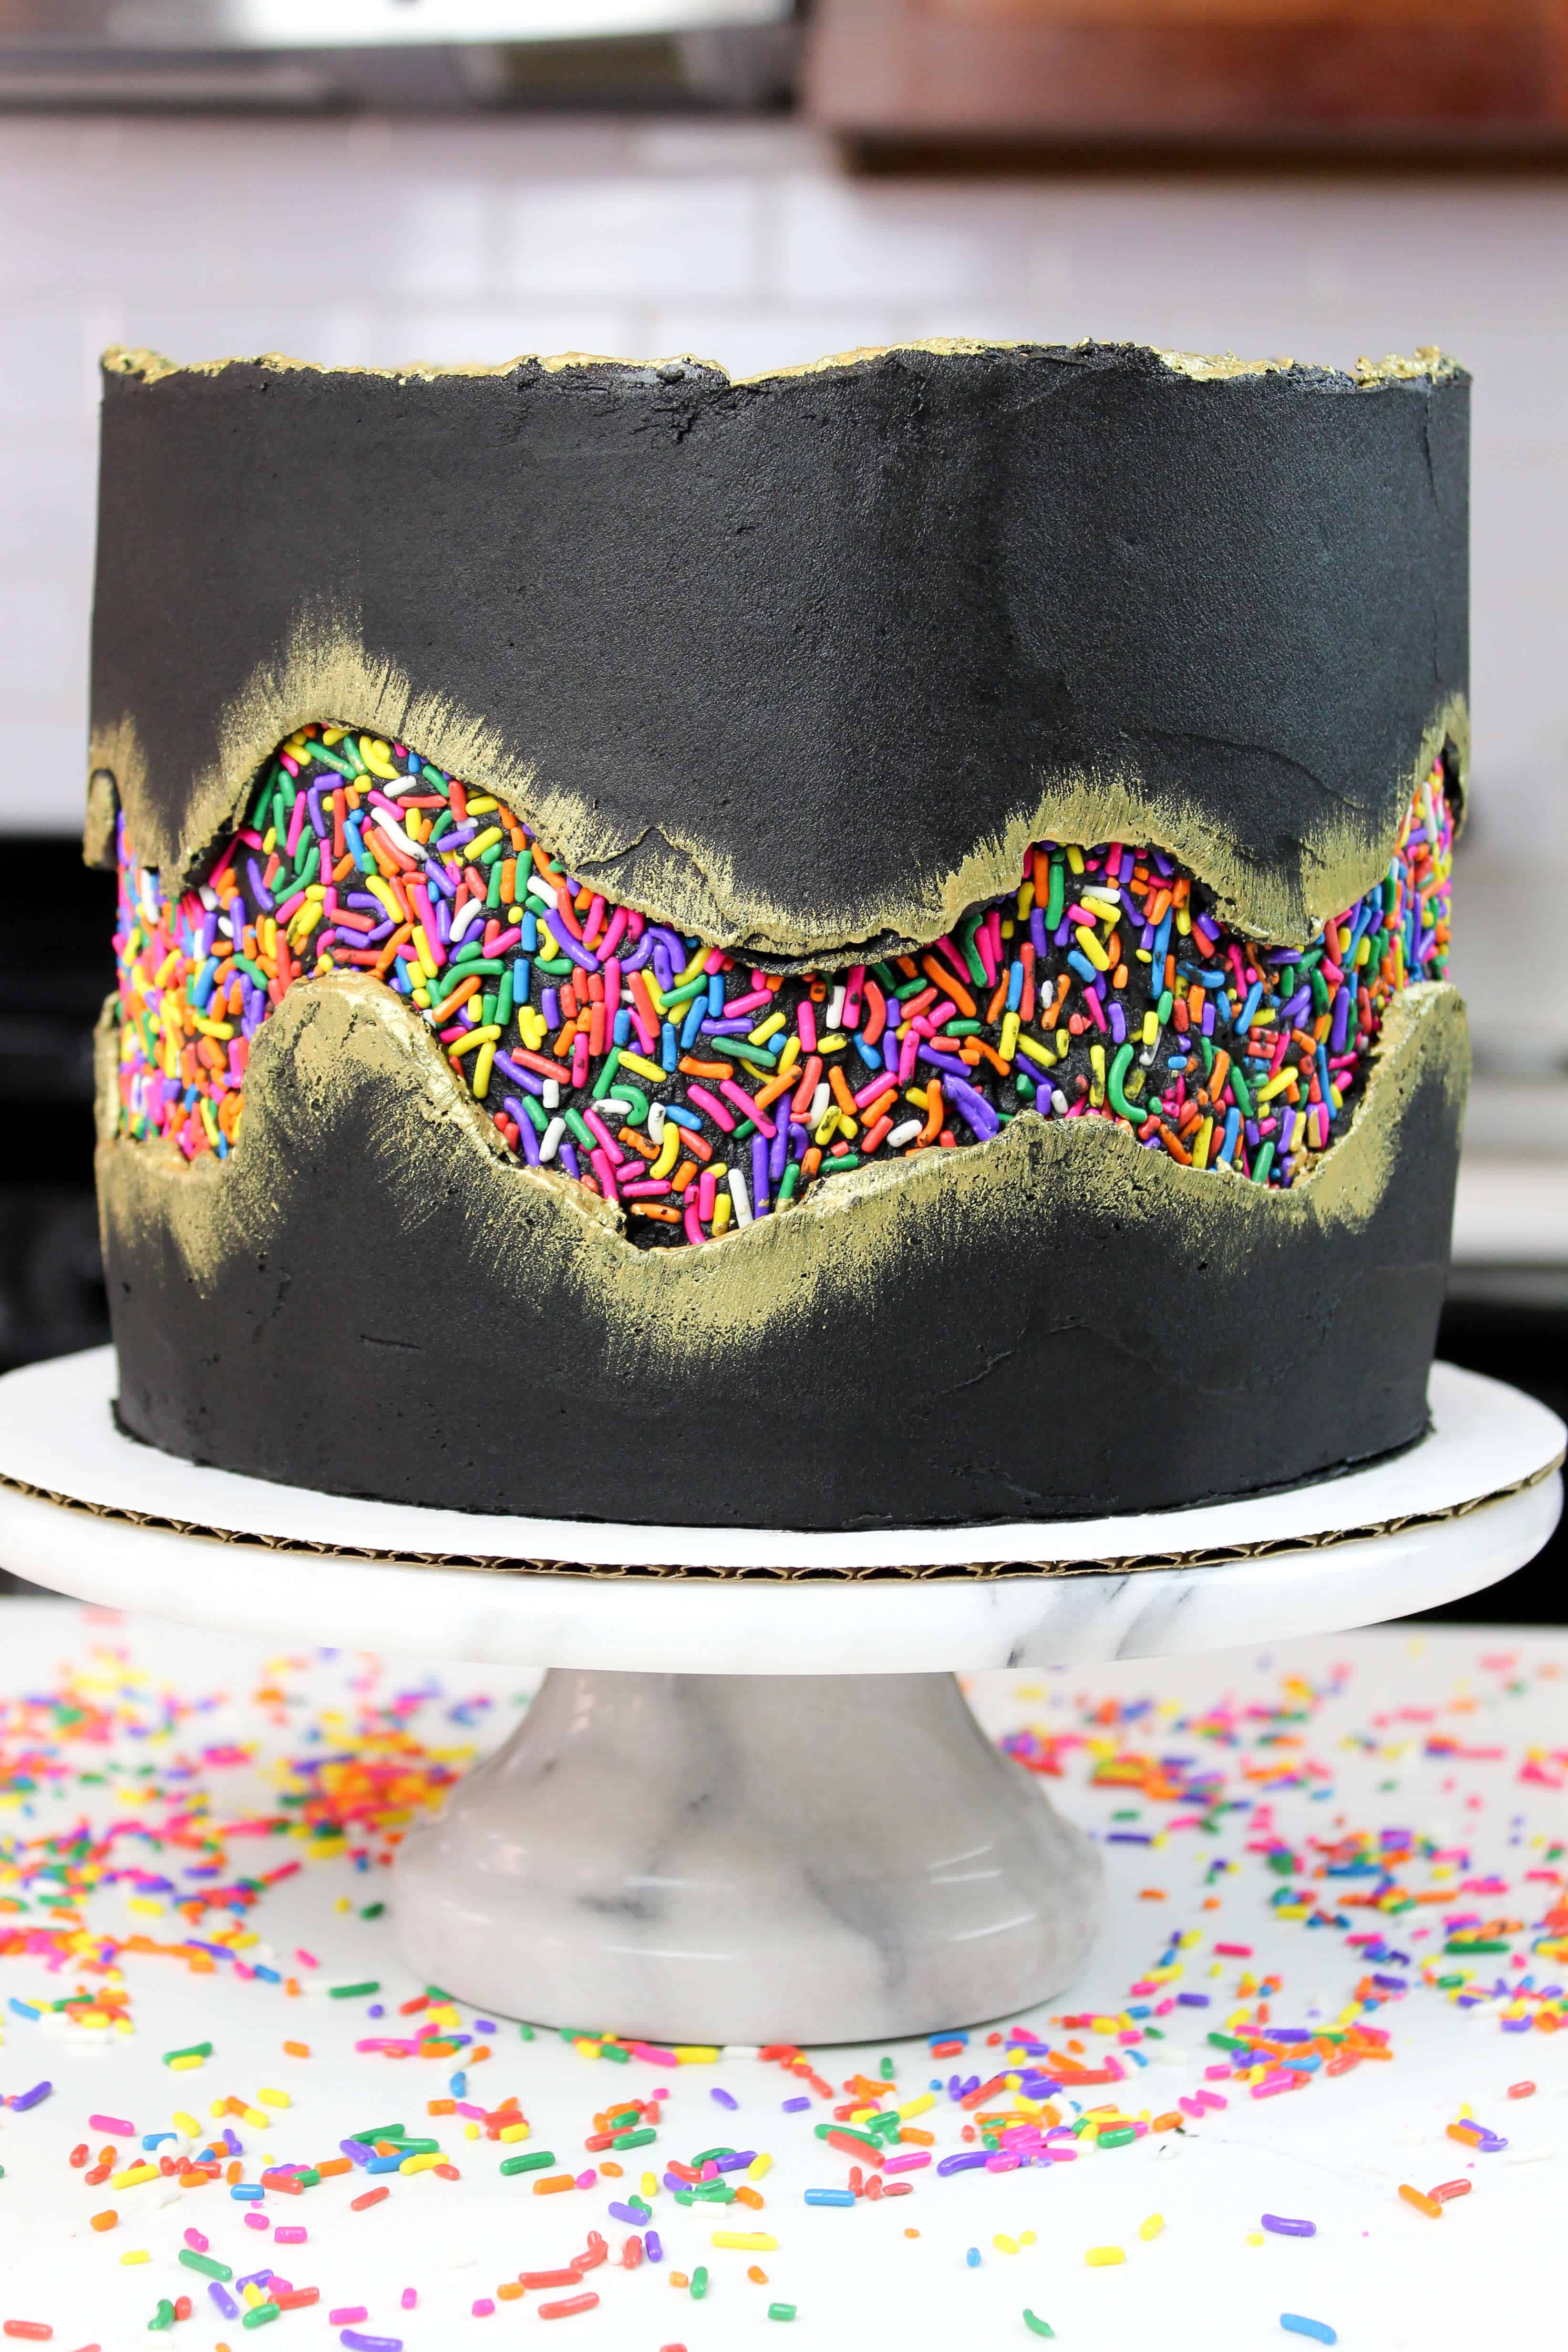 Bild von sprinkle fault Line Cake, mattiert mit schwarzer Buttercreme